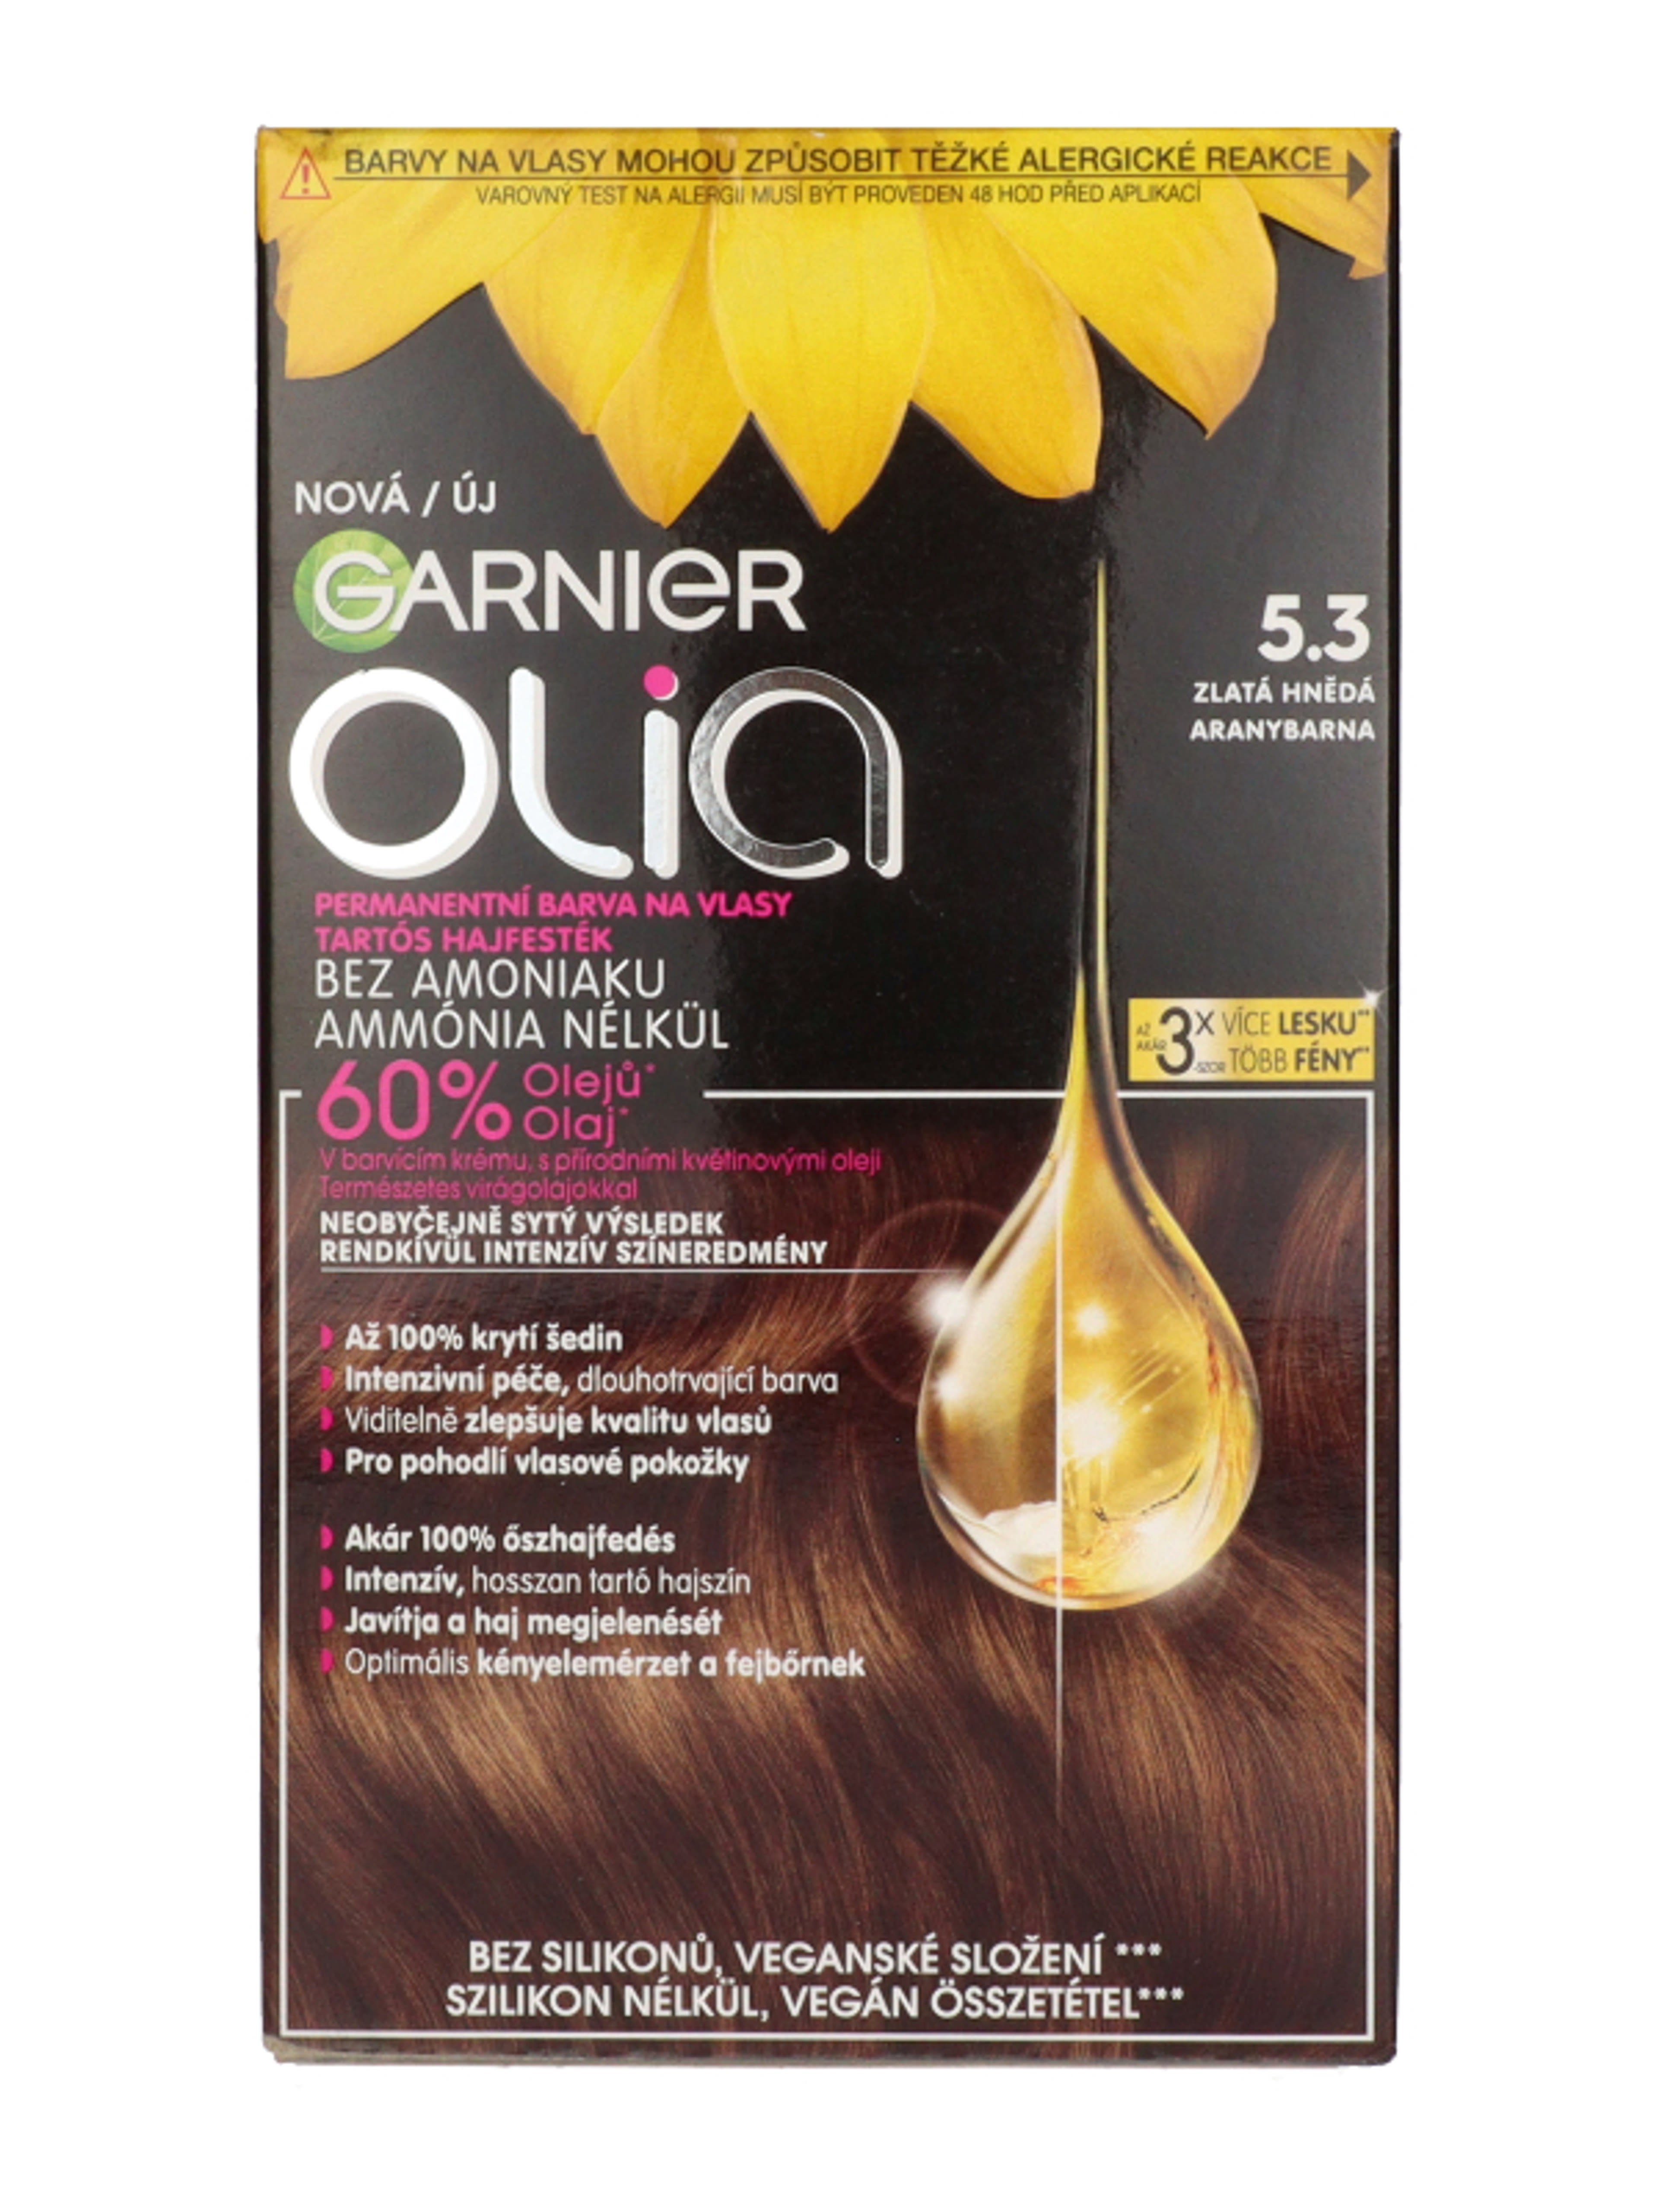 Garnier Olia hajfesték /5.3 Golden Brown - 1 db